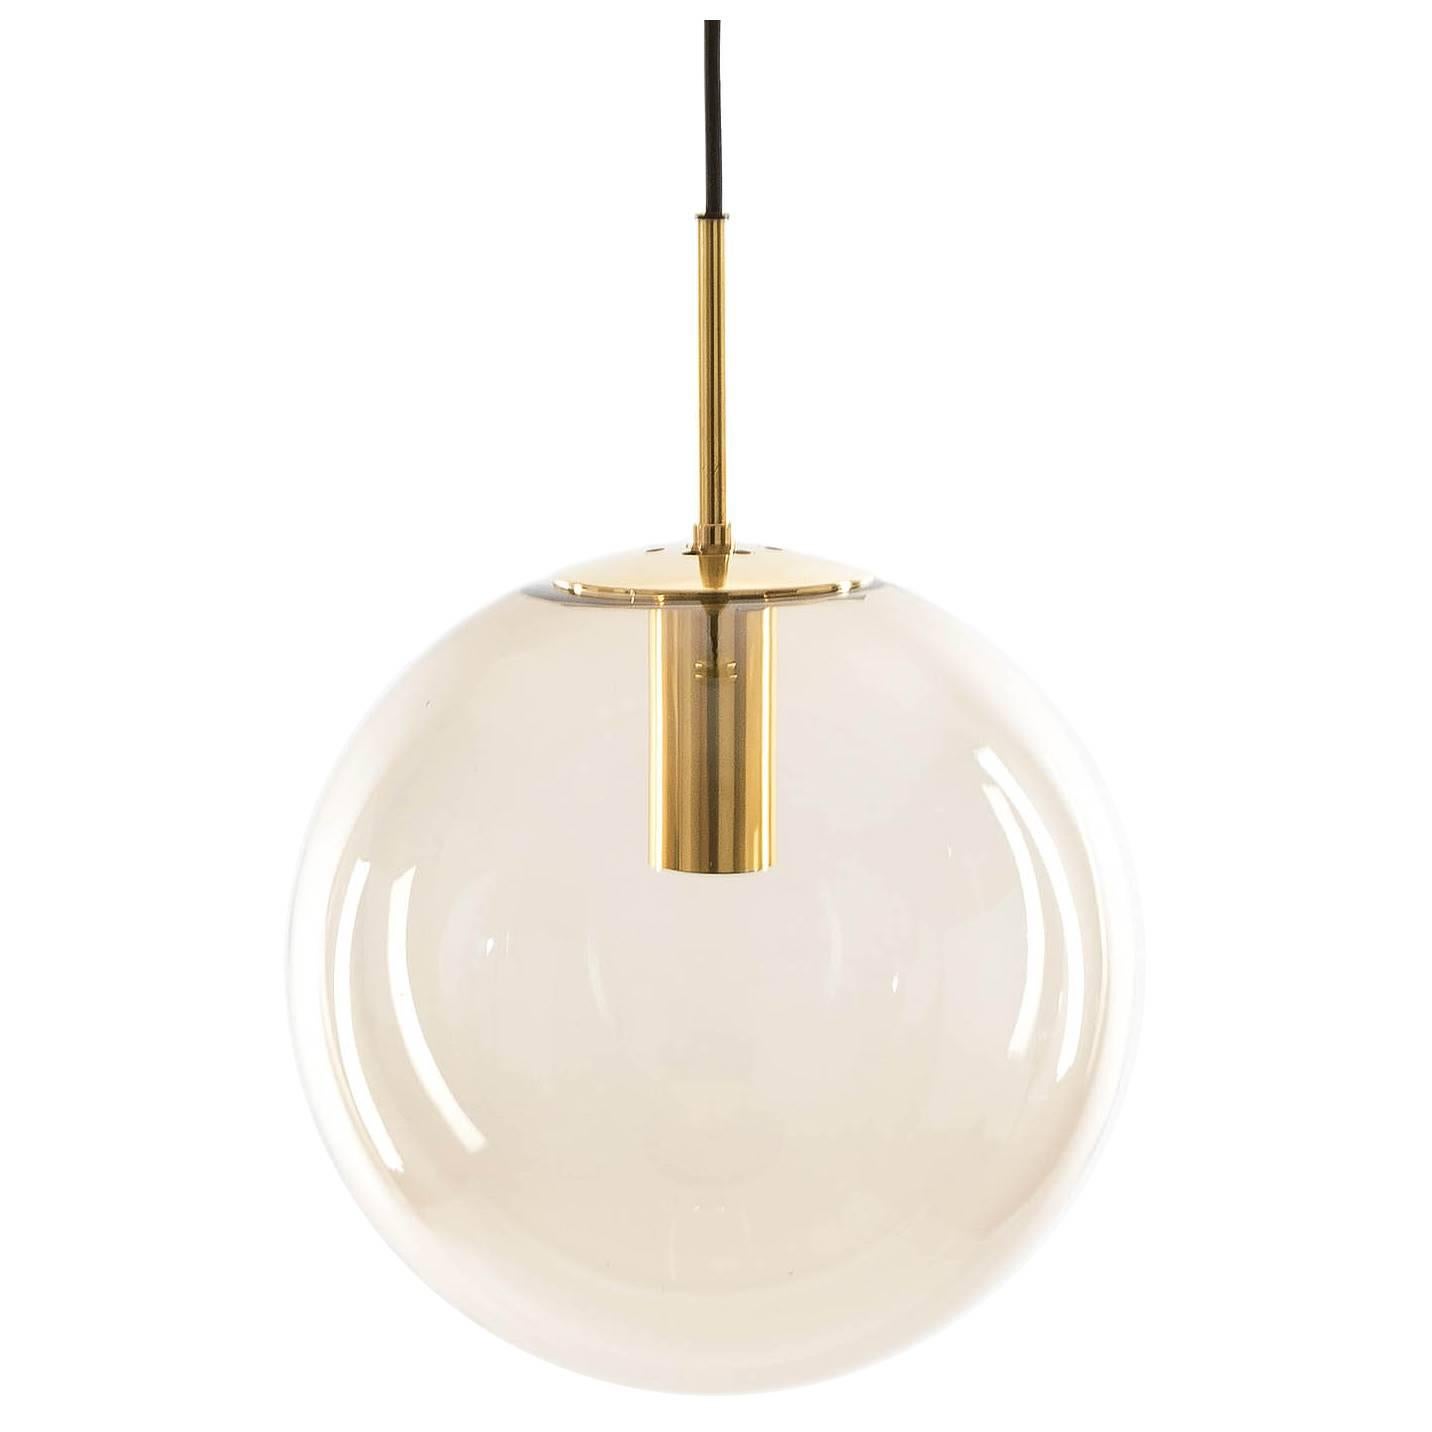 Limburg Globe Pendant Light Brass and Smoked Glass 